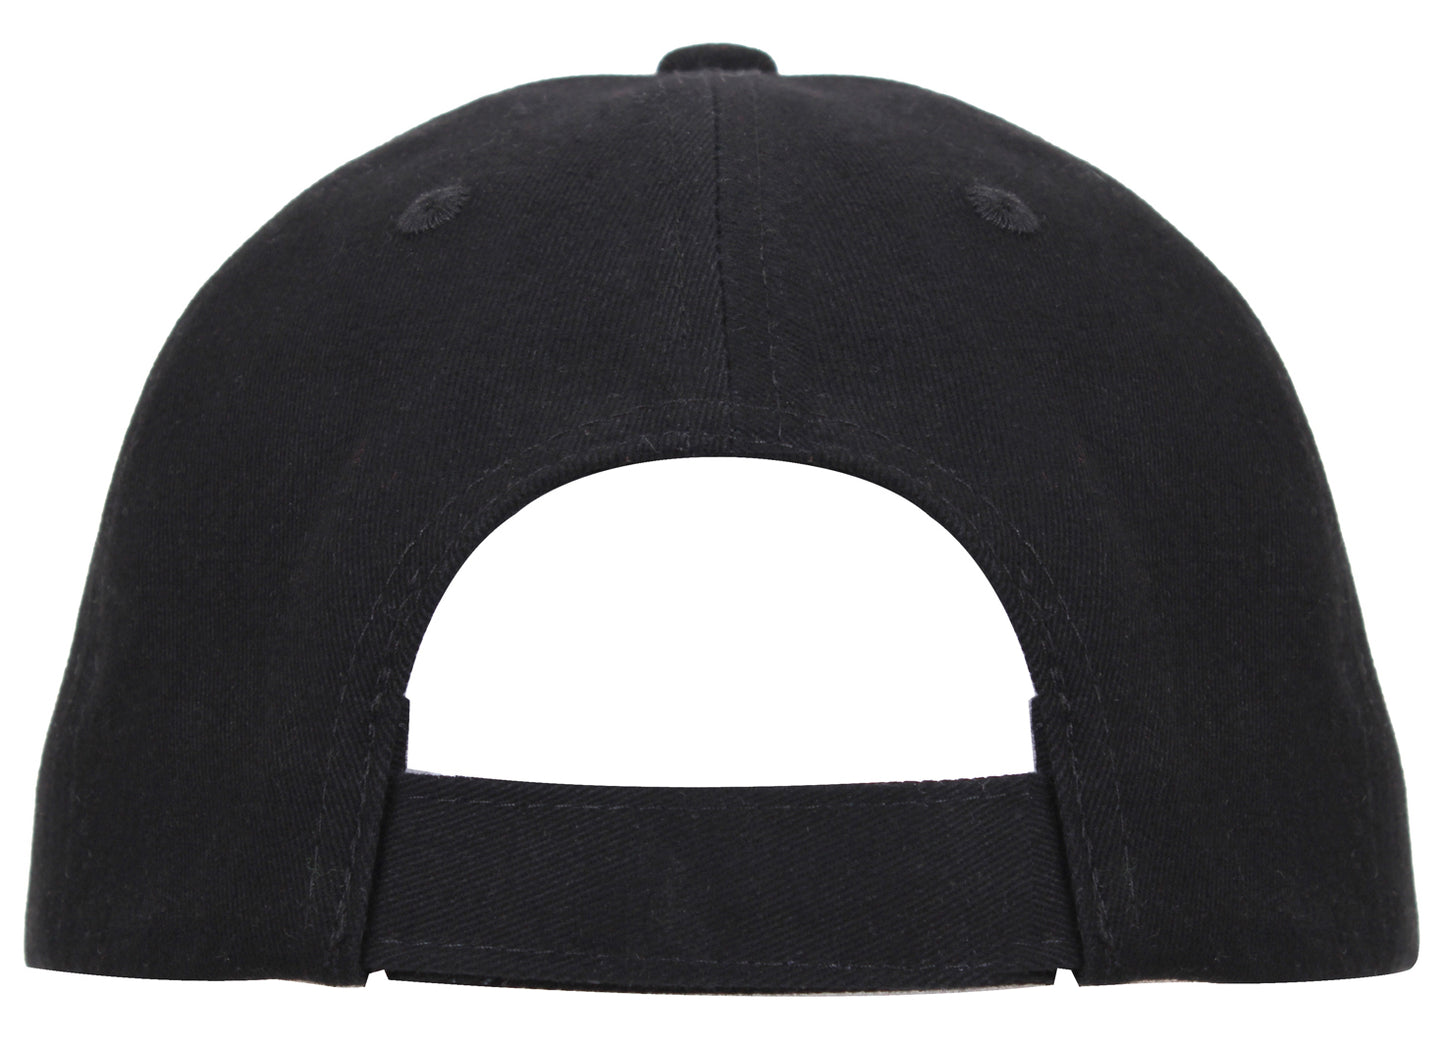 Rothco NASA Mid-Low Profile Cap - "NASA" Black Adjustable Baseball Style Hat